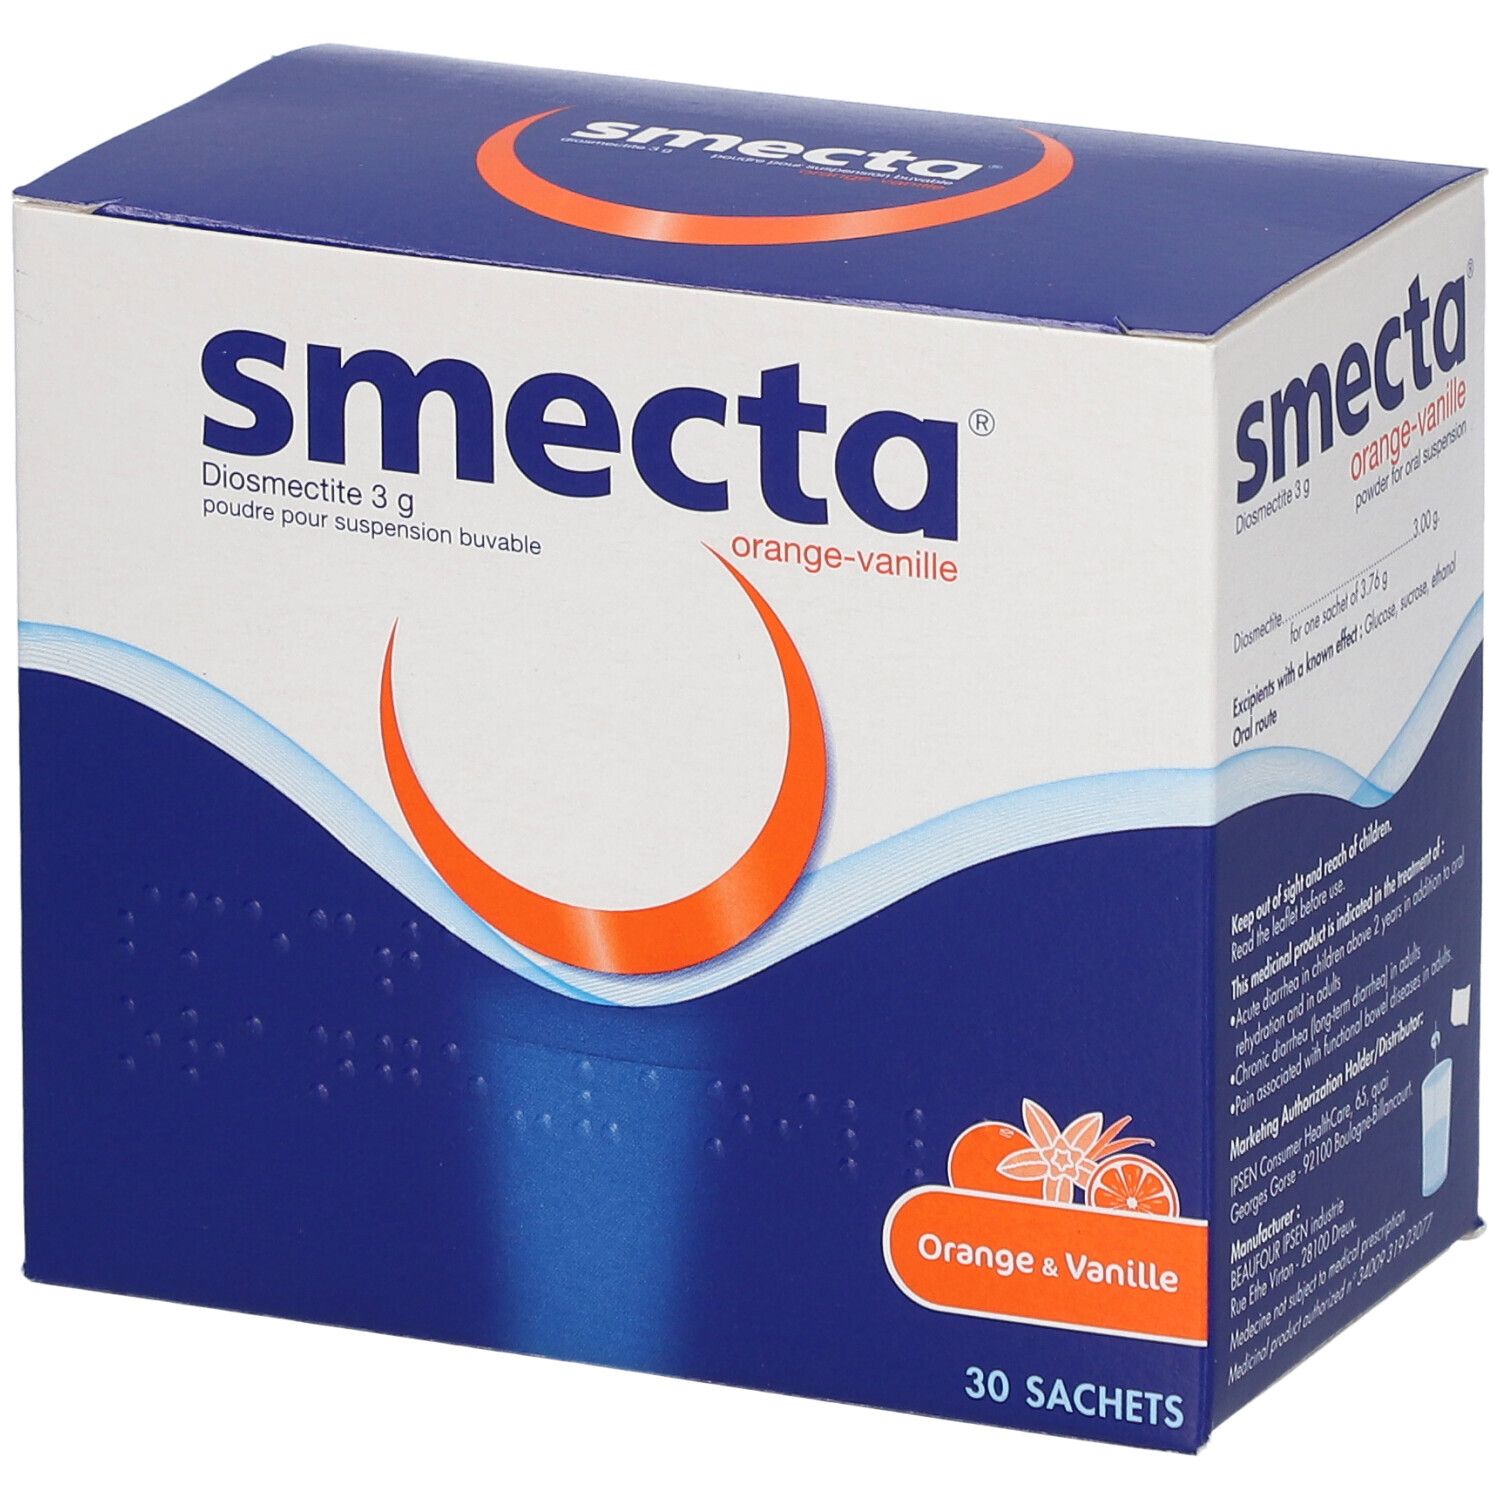 Smecta® 3 g Orange-Vanille